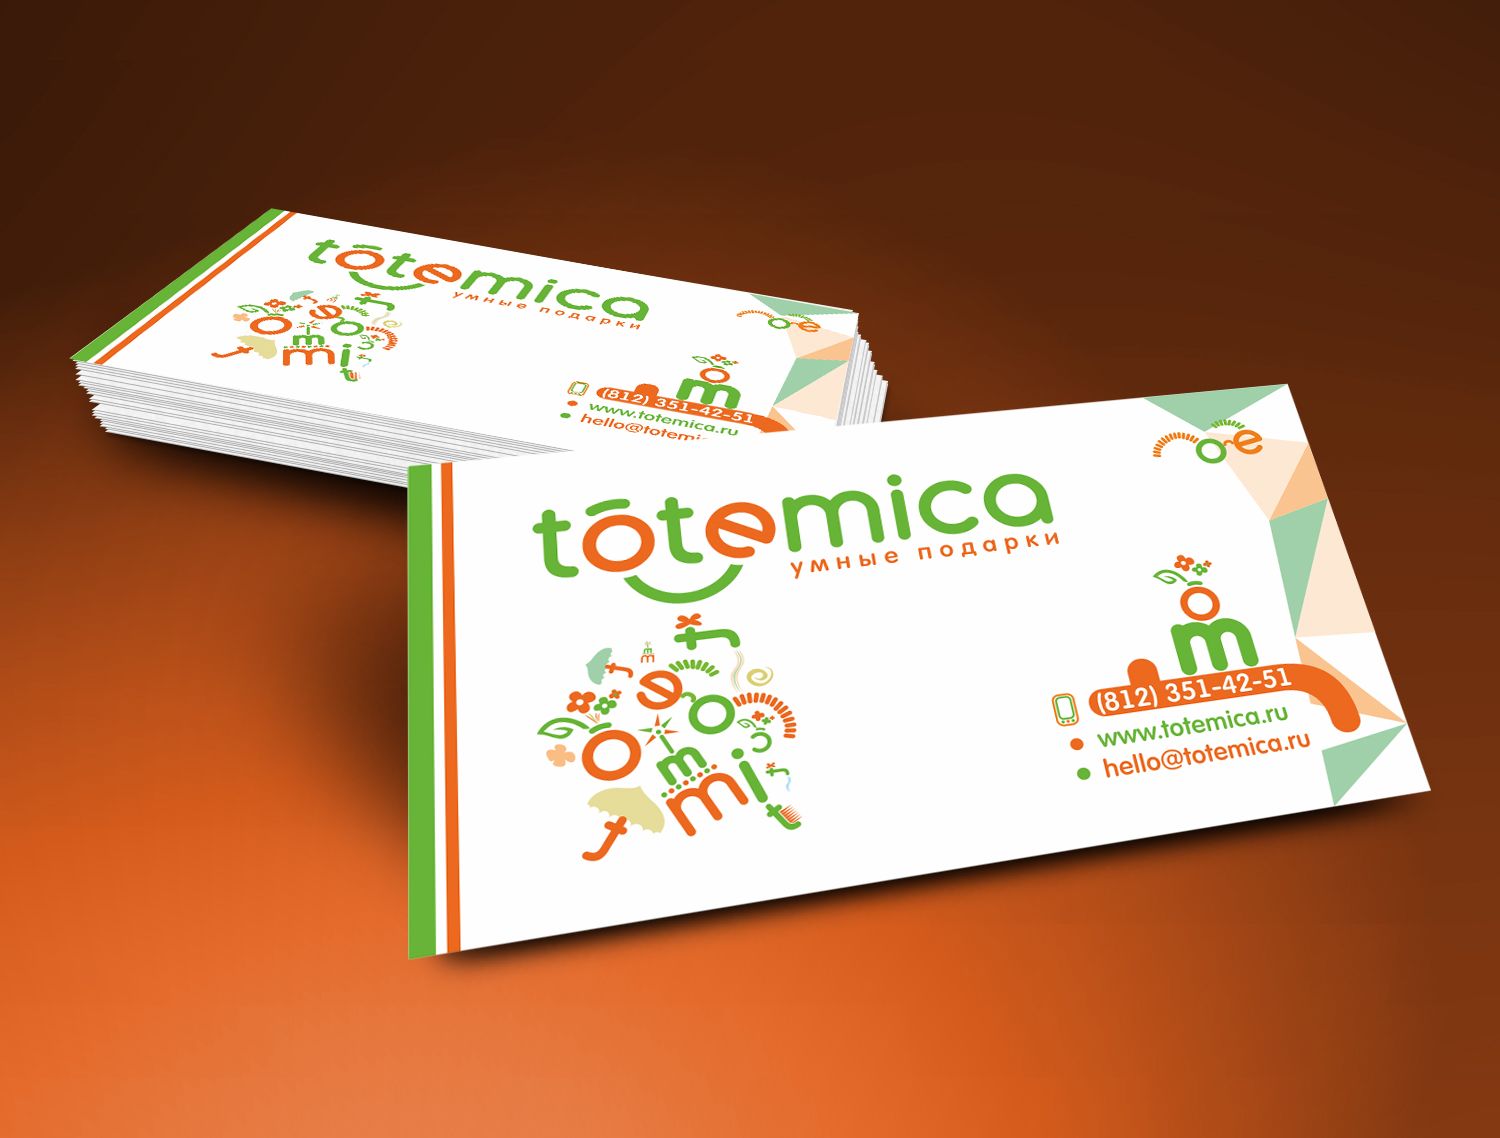 Лого и ФС для ИМ подарков Totemica - дизайнер luishamilton